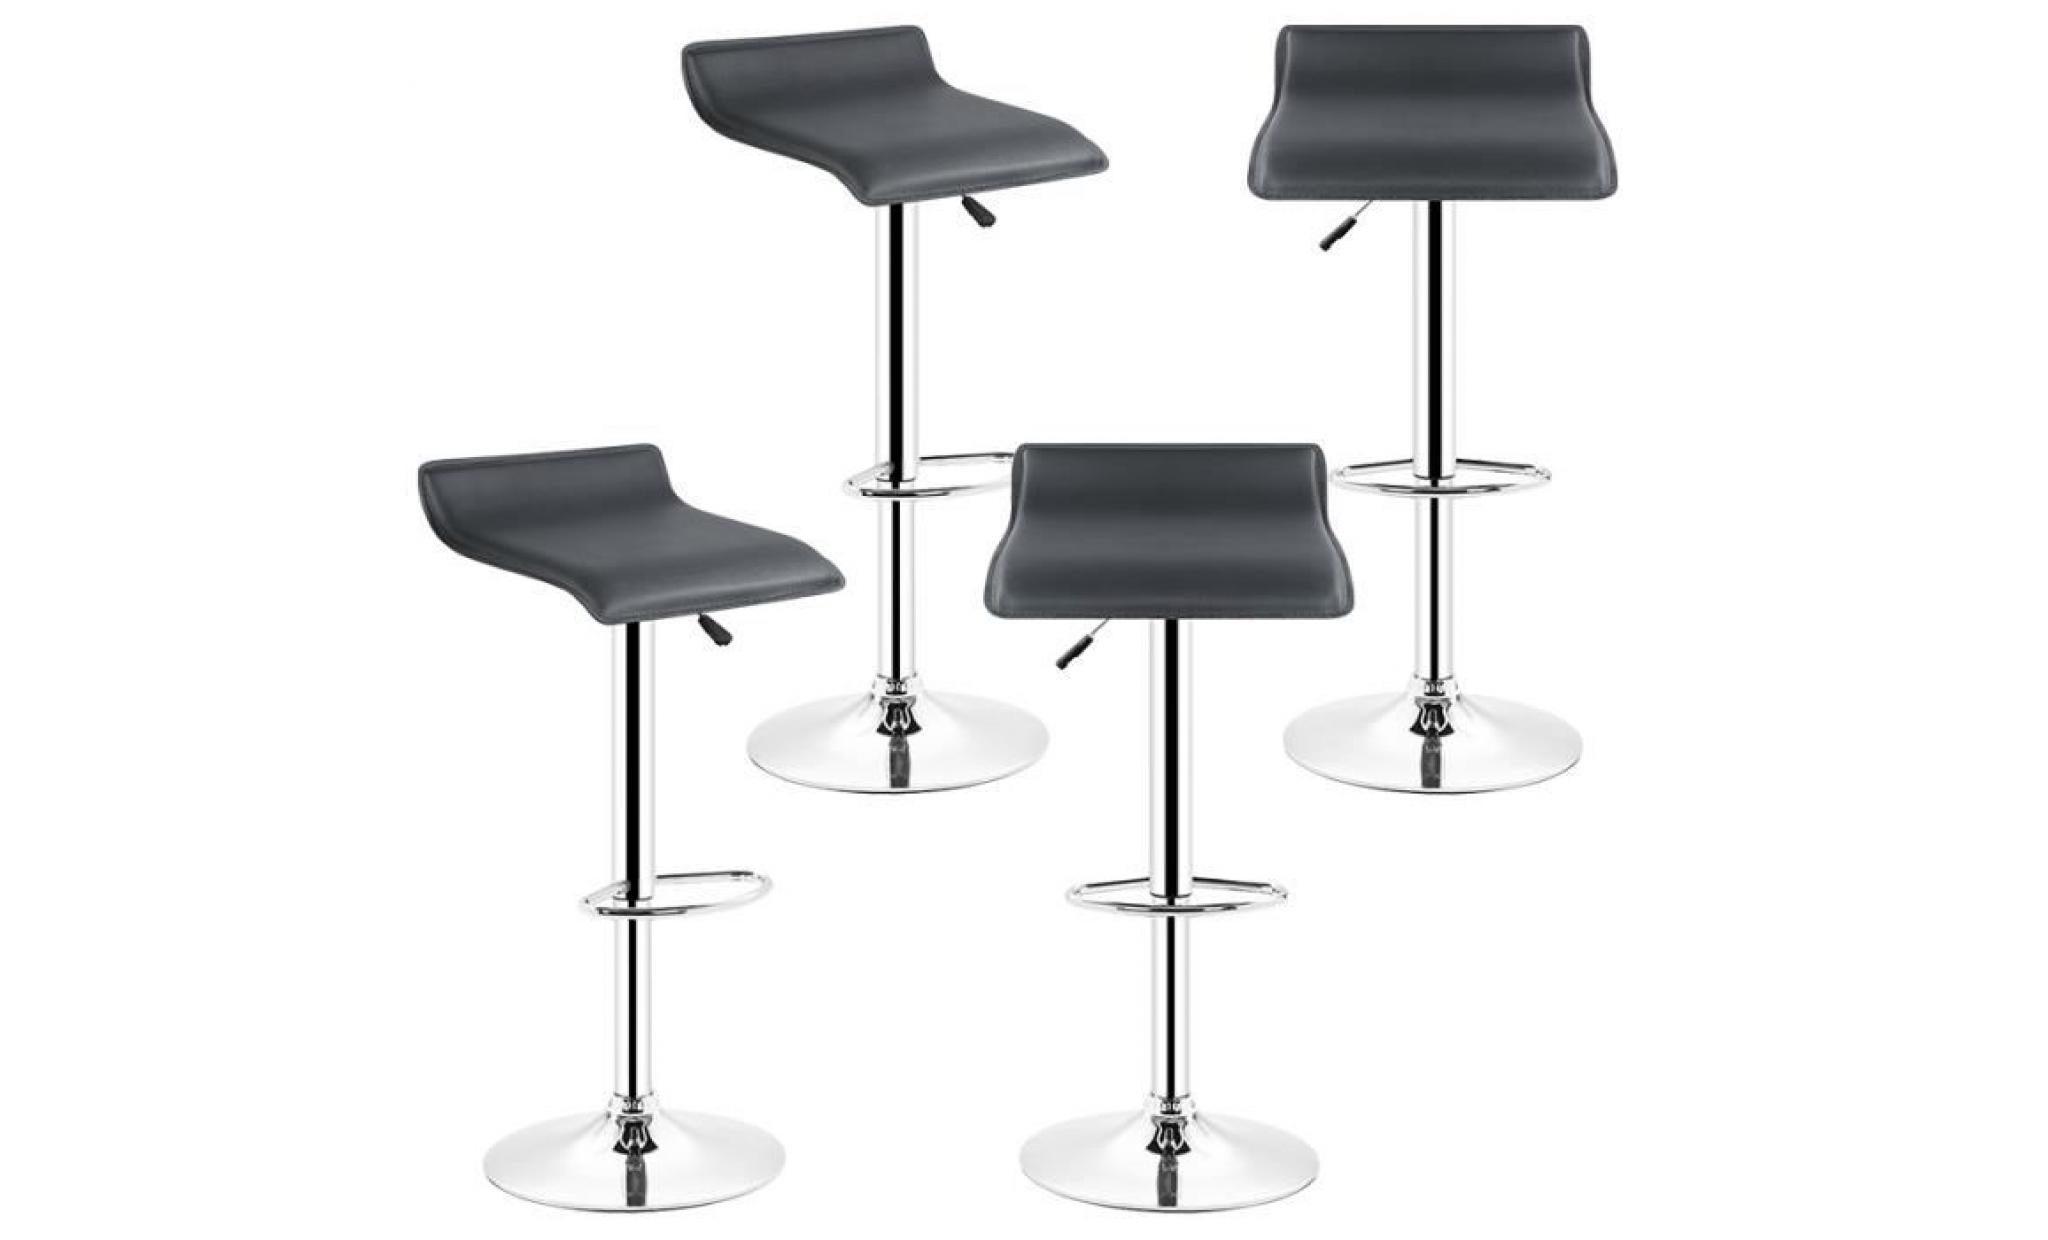 keisha n bacher lot de 4 tabouret de bar noir, chaise de bar design, tabouret ergonomique